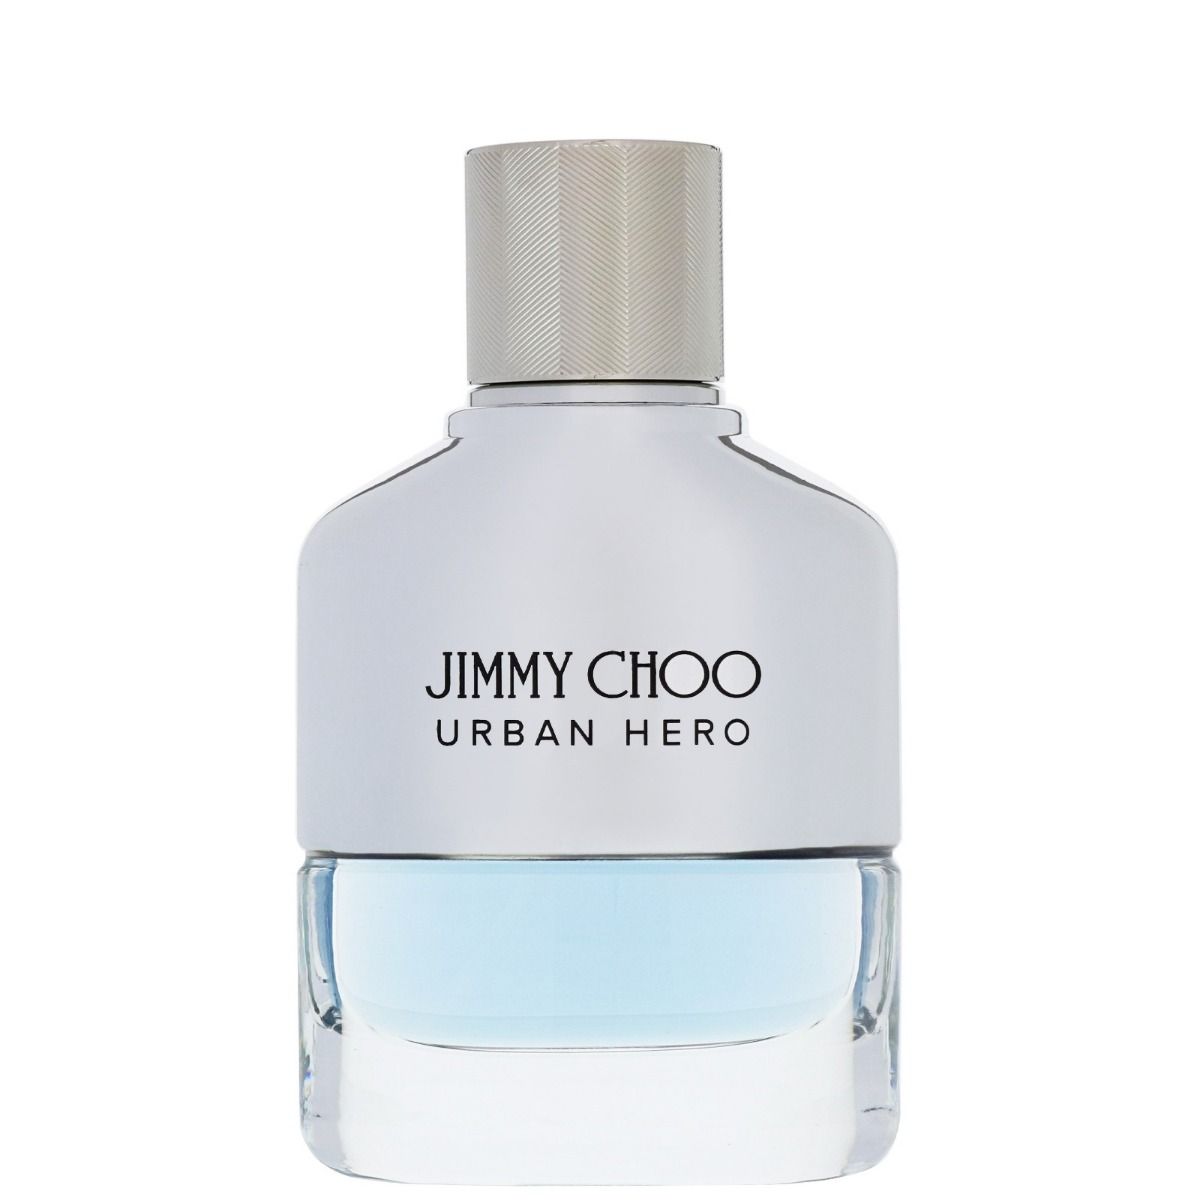 Jimmy Choo Urban Hero Edp 100ml